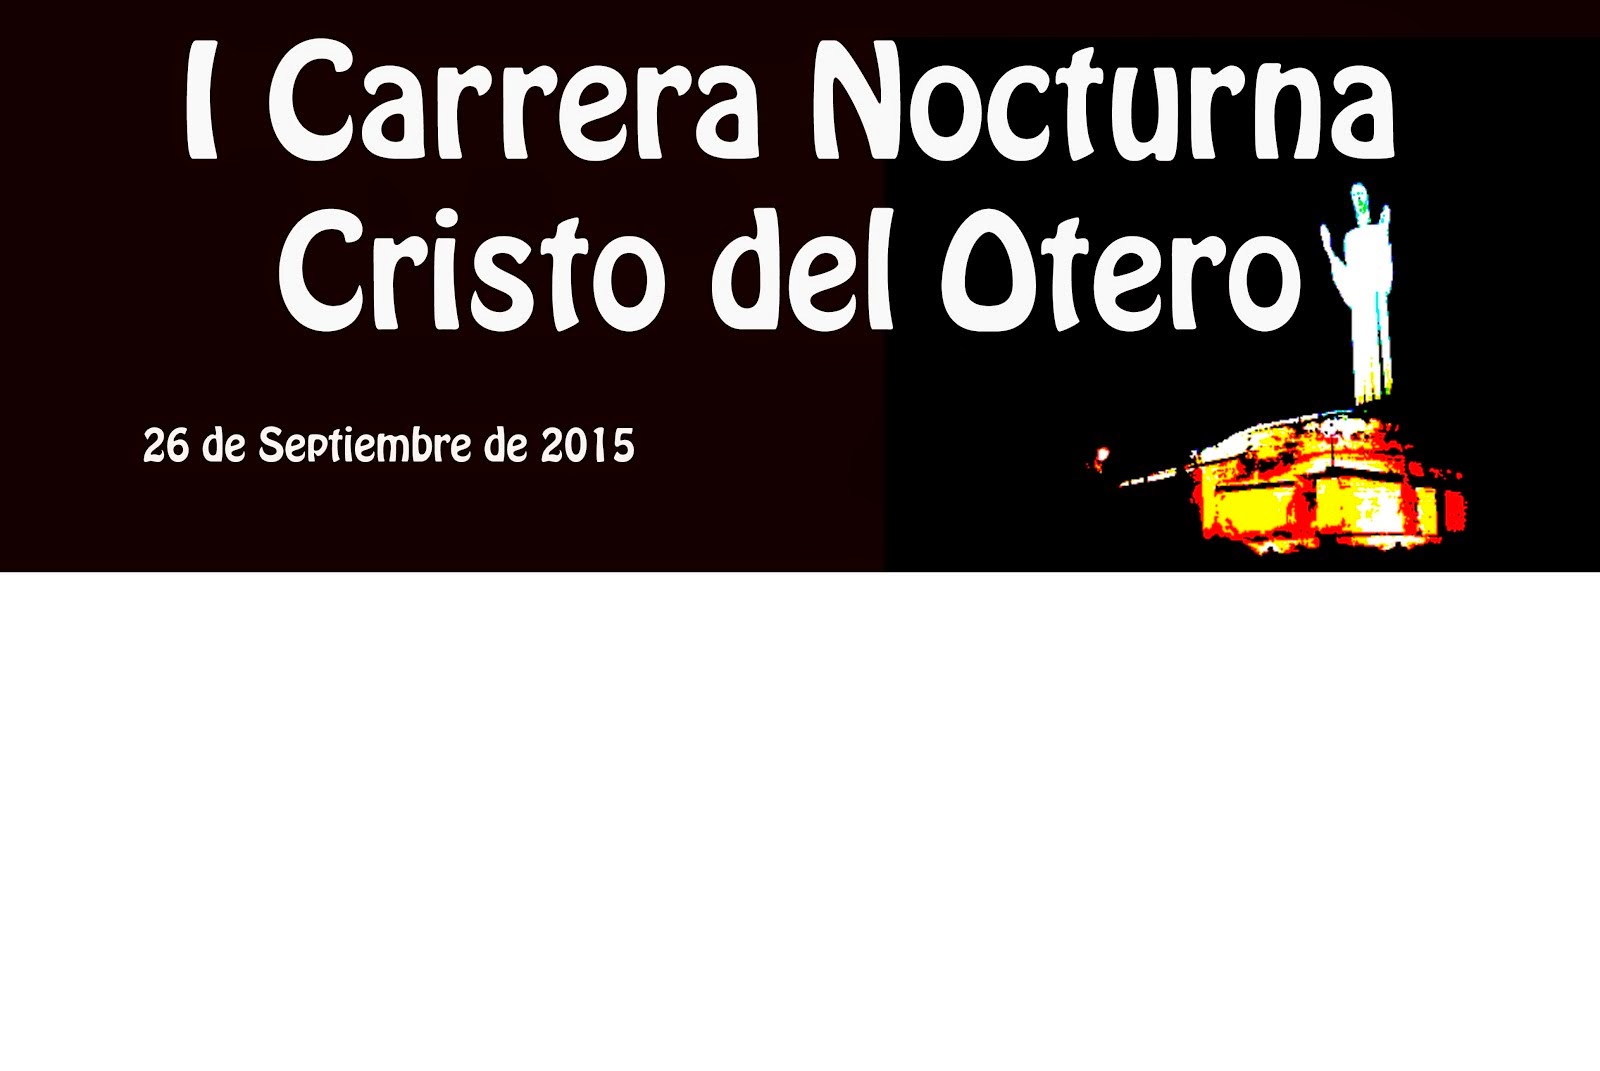 CARRERA NOCTURNA CRISTO DEL OTERO